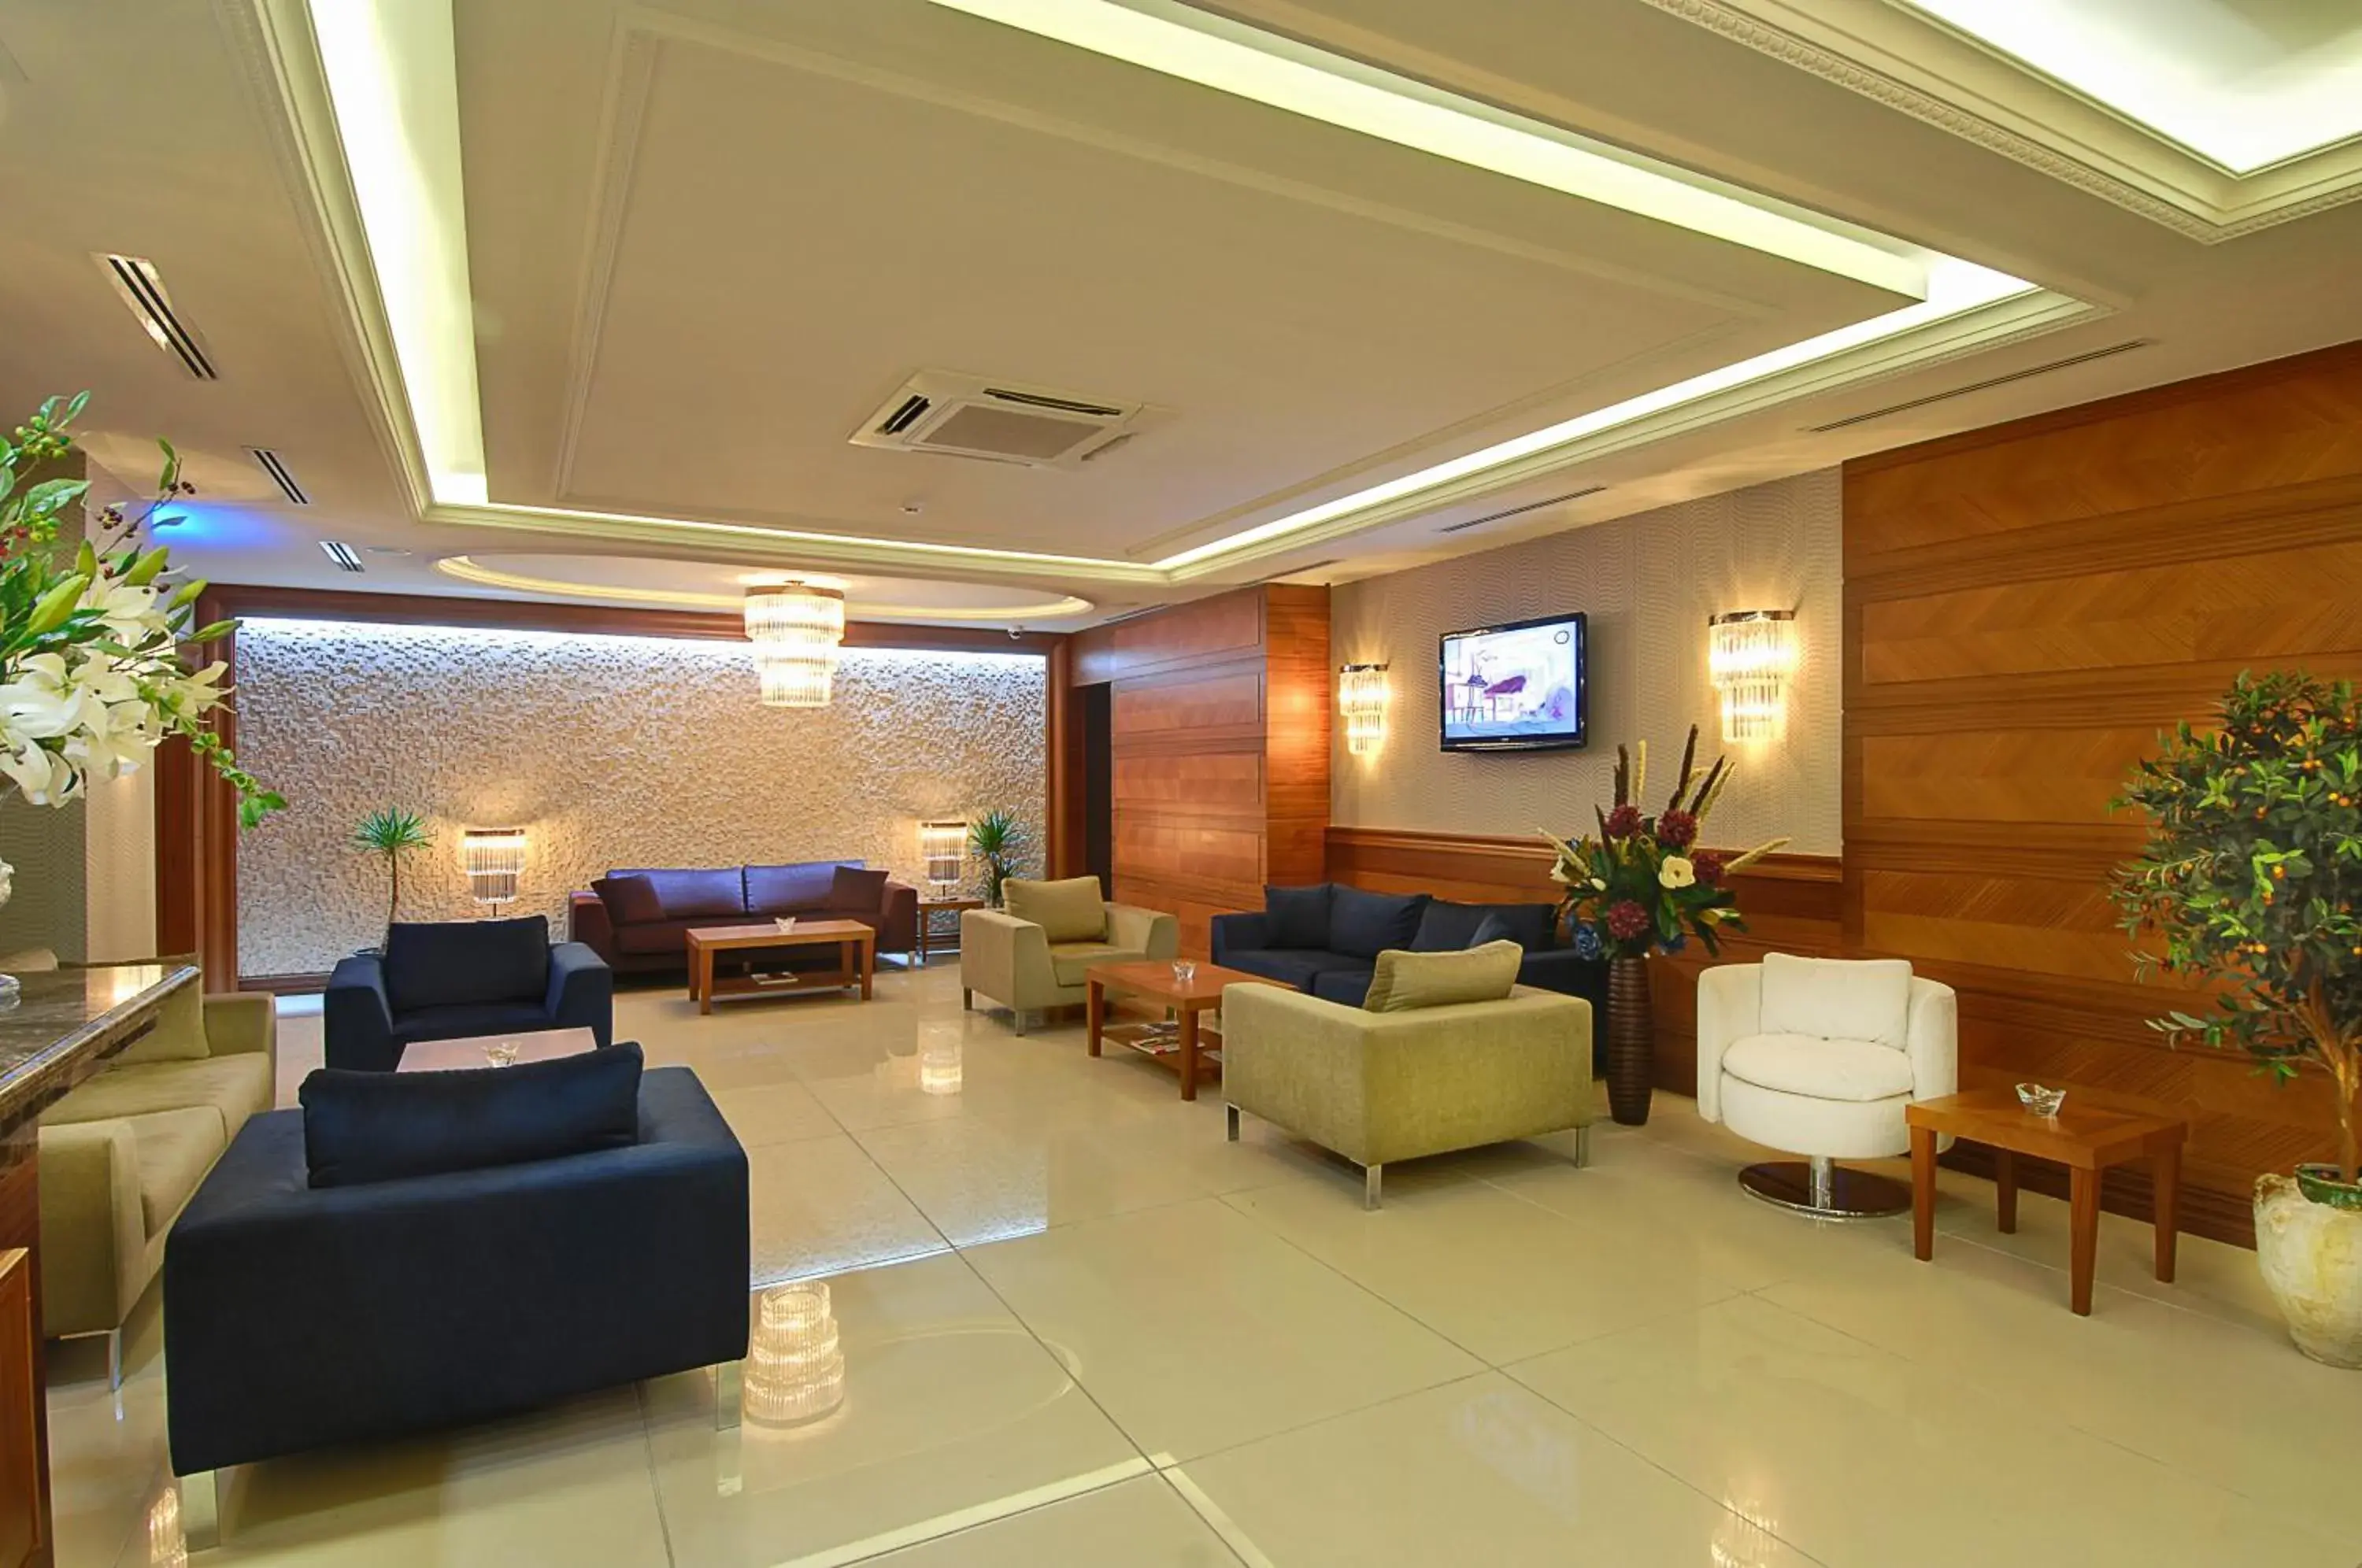 Lobby or reception, Lobby/Reception in Tugcu Hotel Select